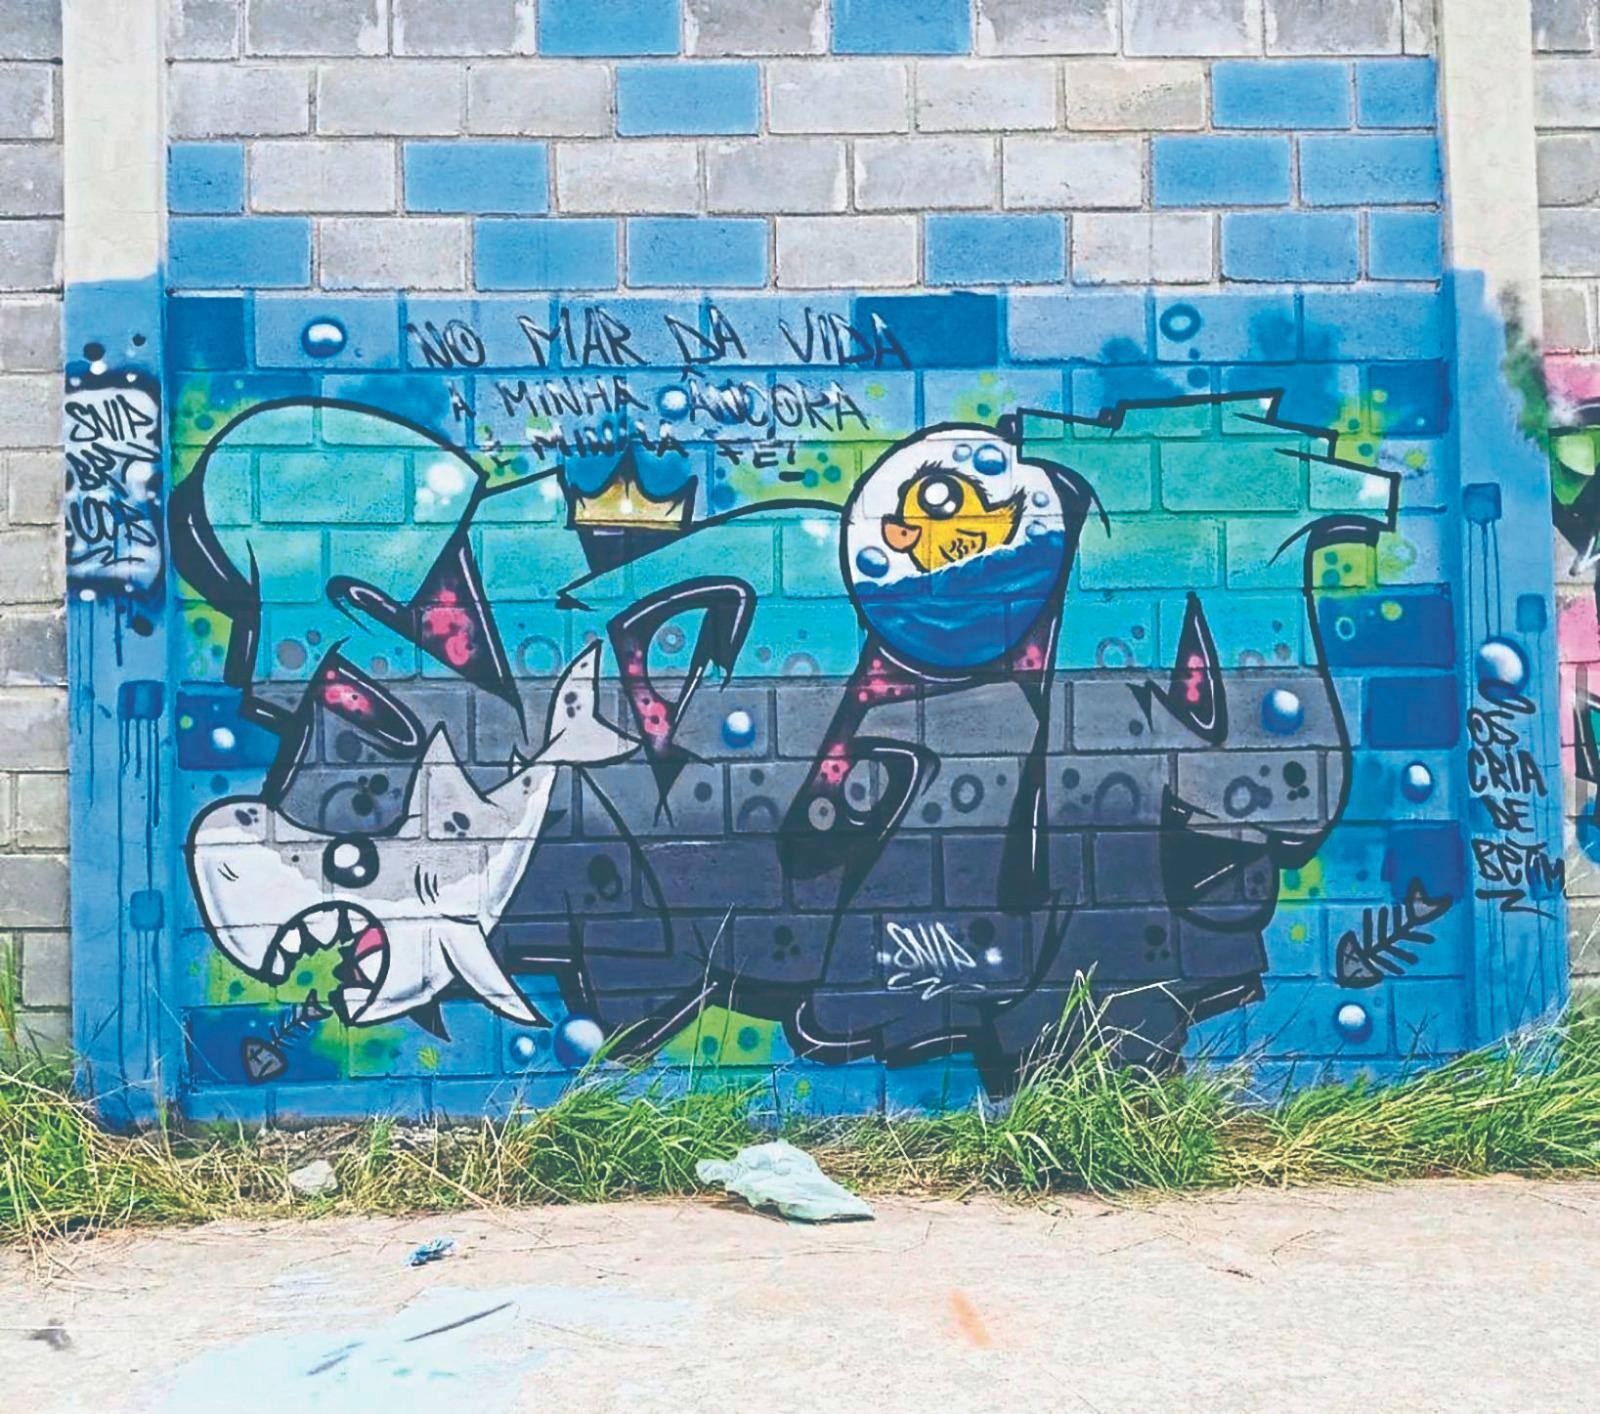 Grafite desenvolvido por Snip, um dos artistas participantes